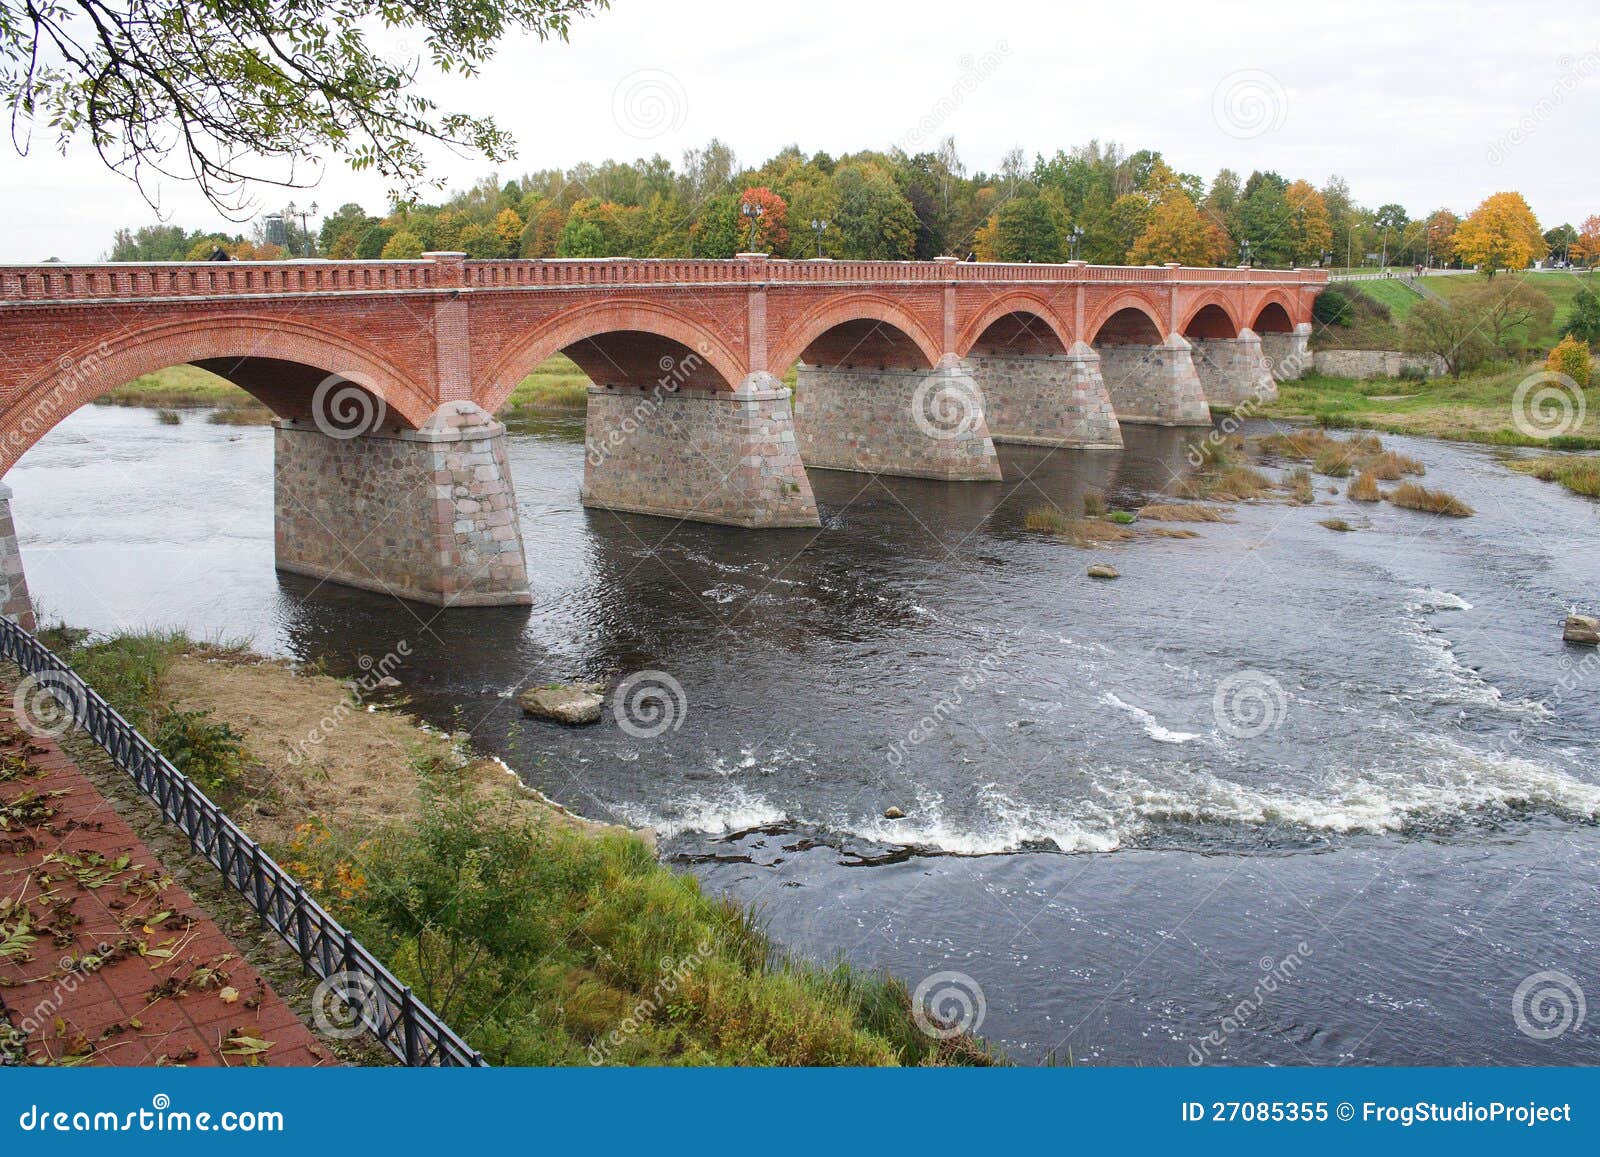 a bridge on the venta river in kuldiga latvia